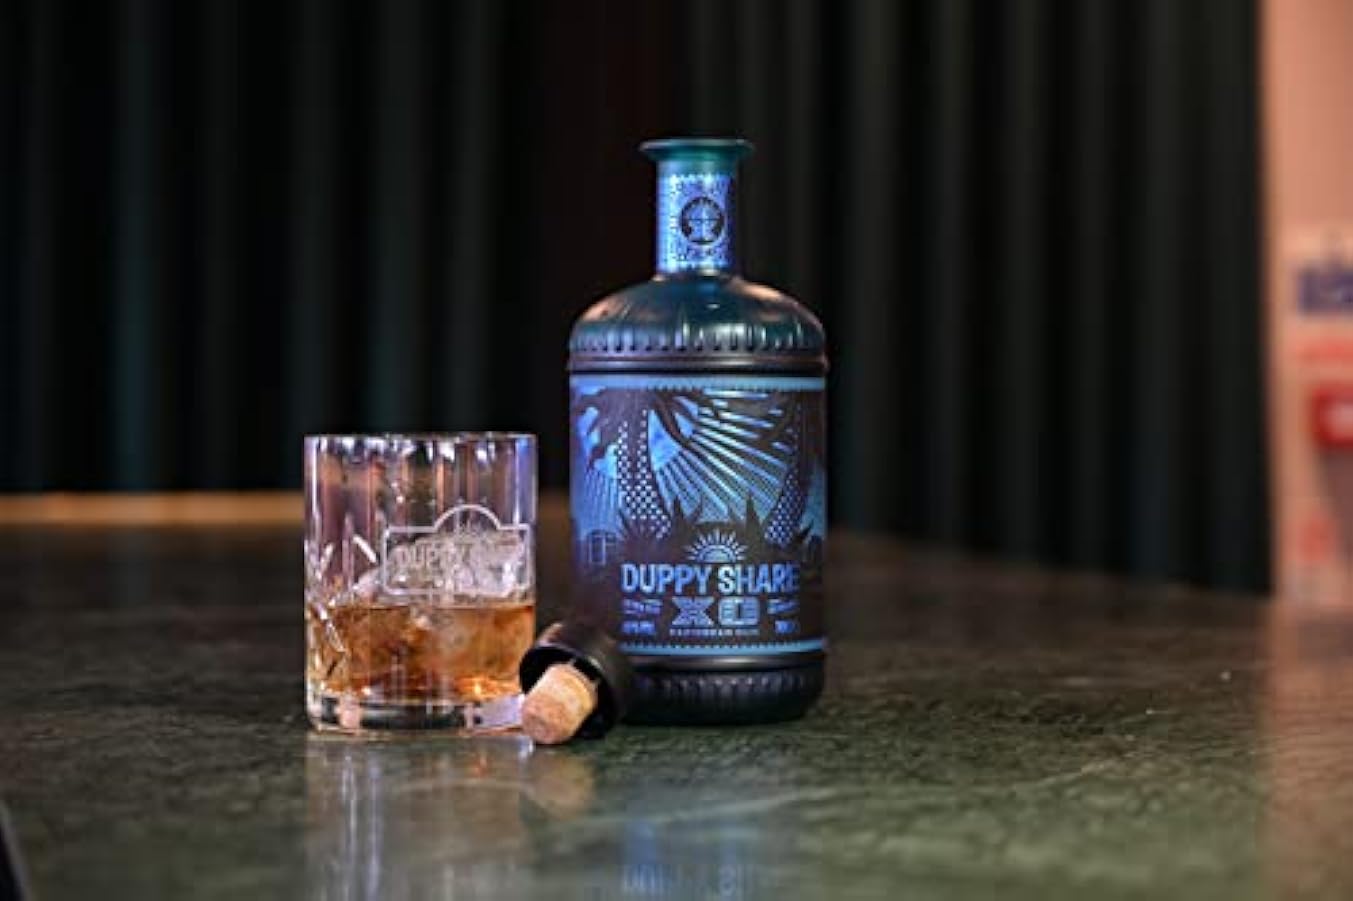 The Duppy Share - XO, Blend Composto Da 100% Rum di Barbados, Pensato per la Degustazione e per Cocktail Complessi, 40% Vol, Bottiglia in Vetro da 700 ml 955324578